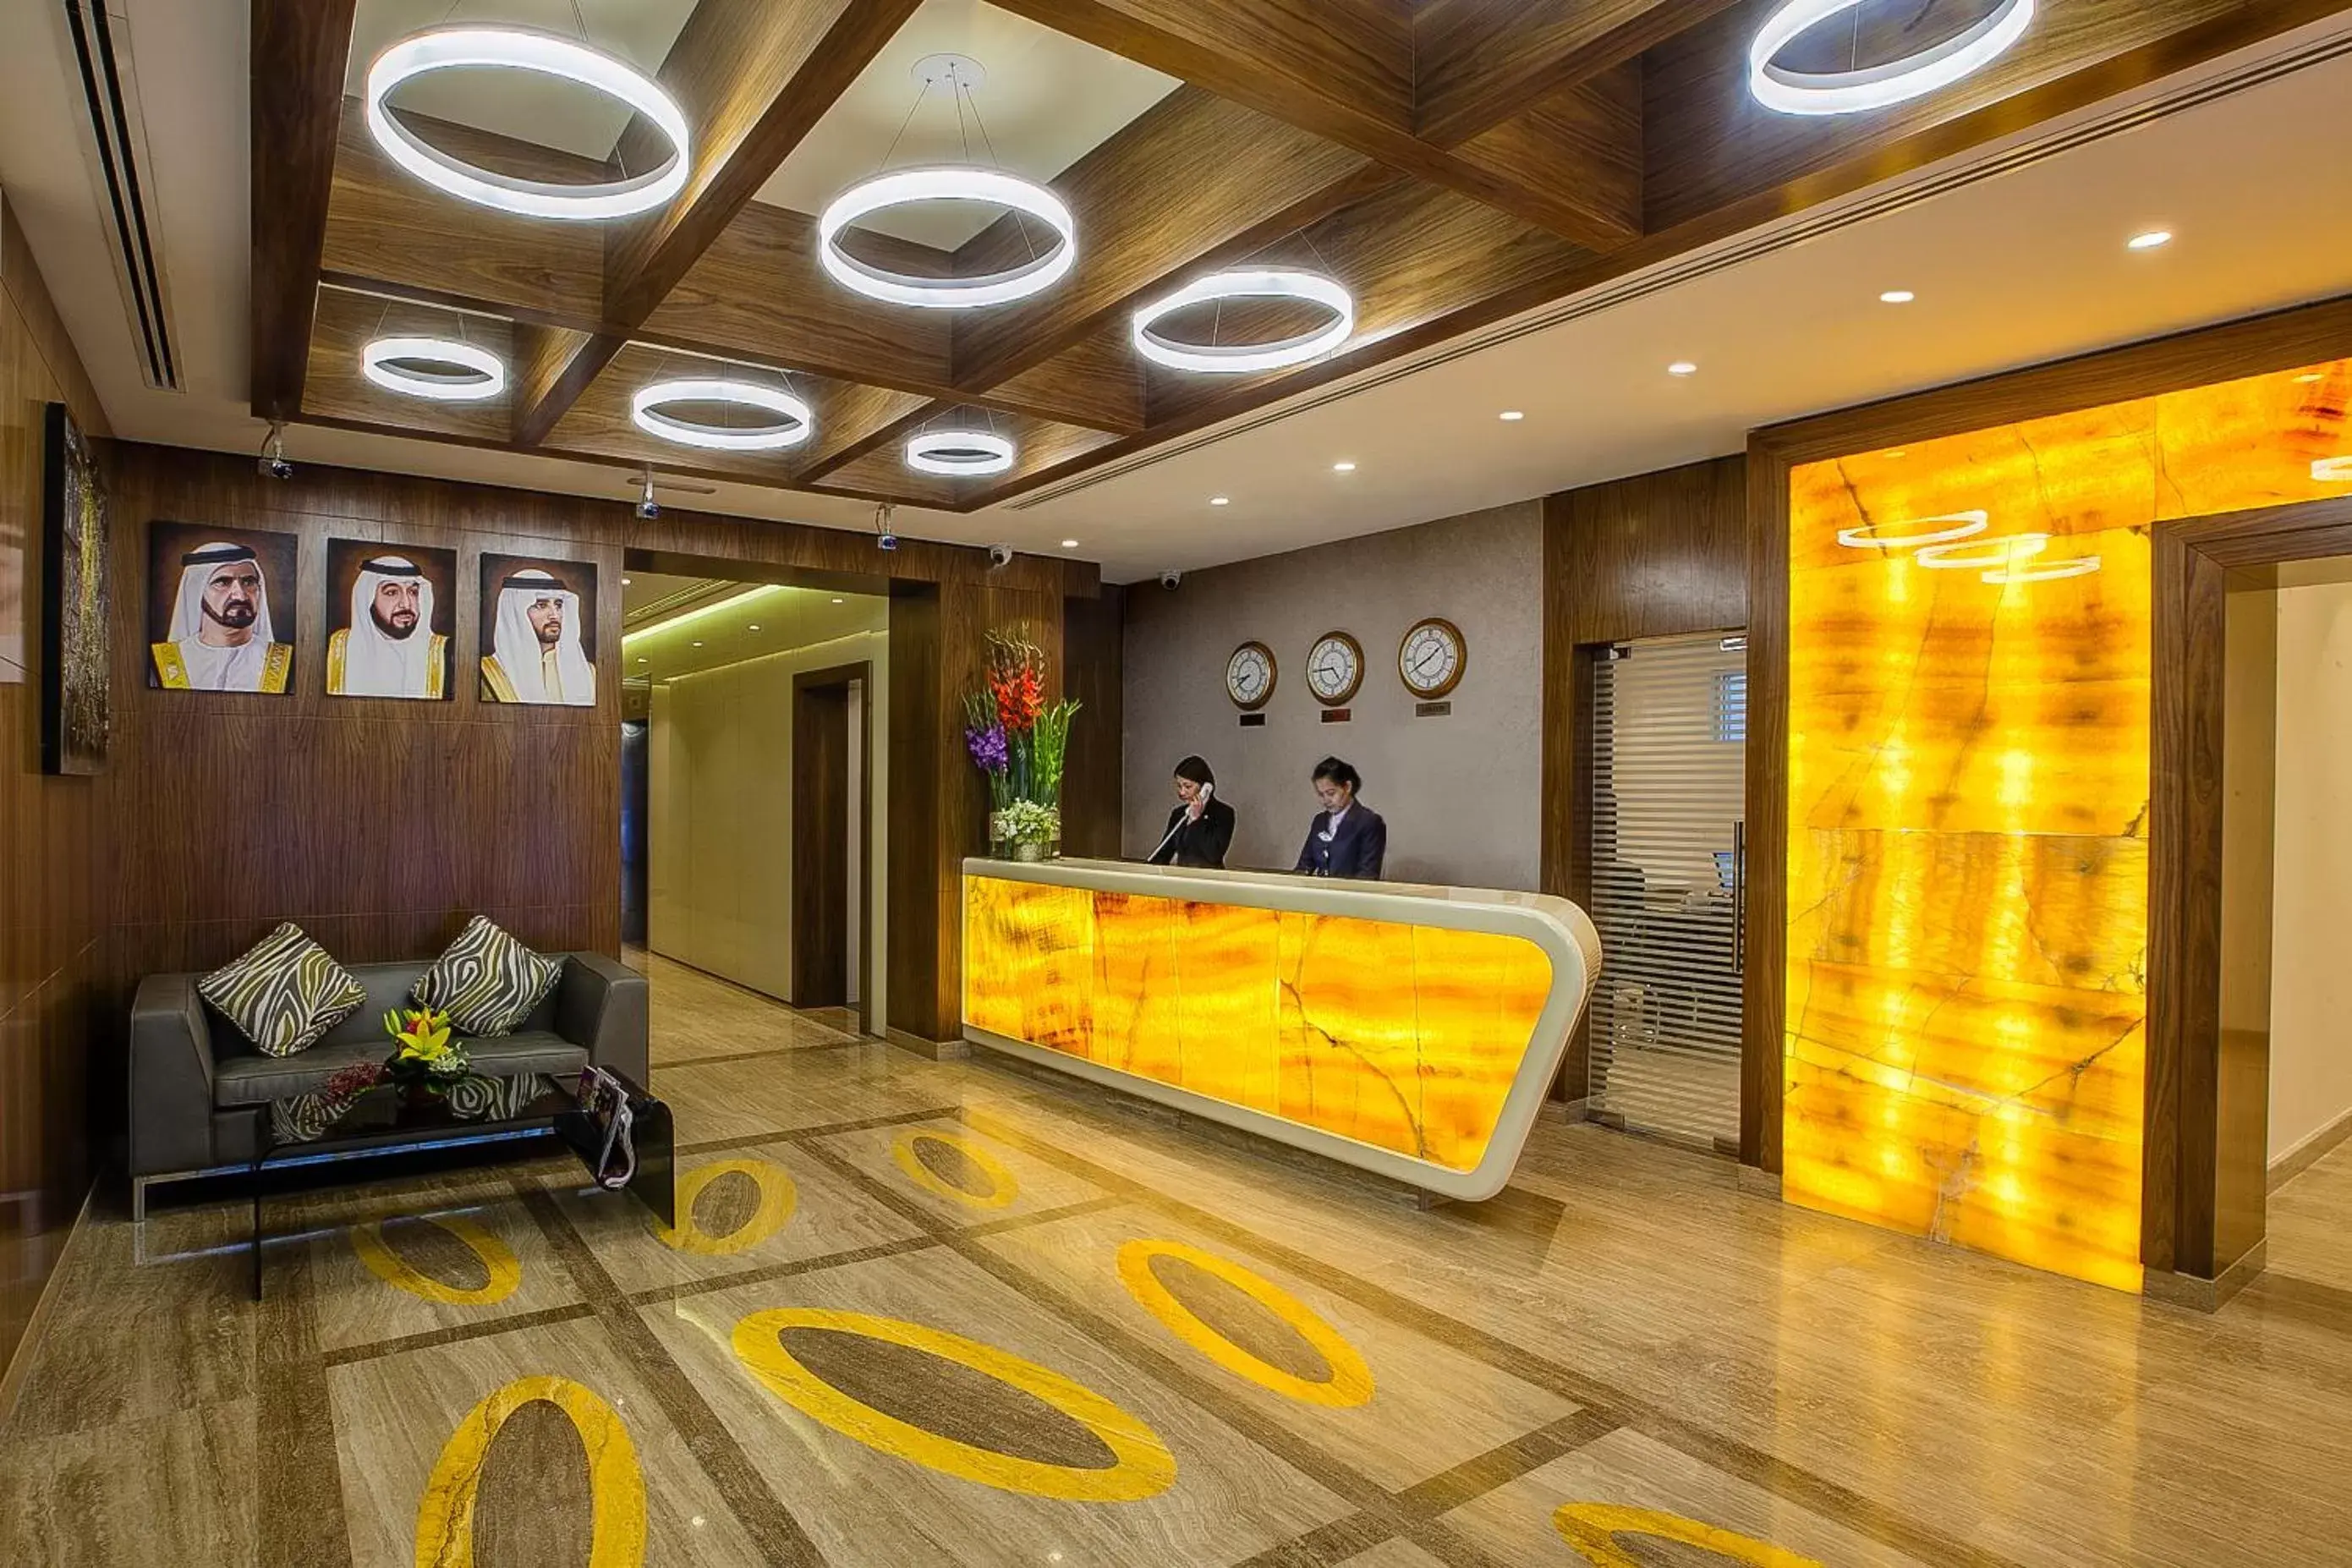 Lobby or reception, Lobby/Reception in Al Sarab Hotel